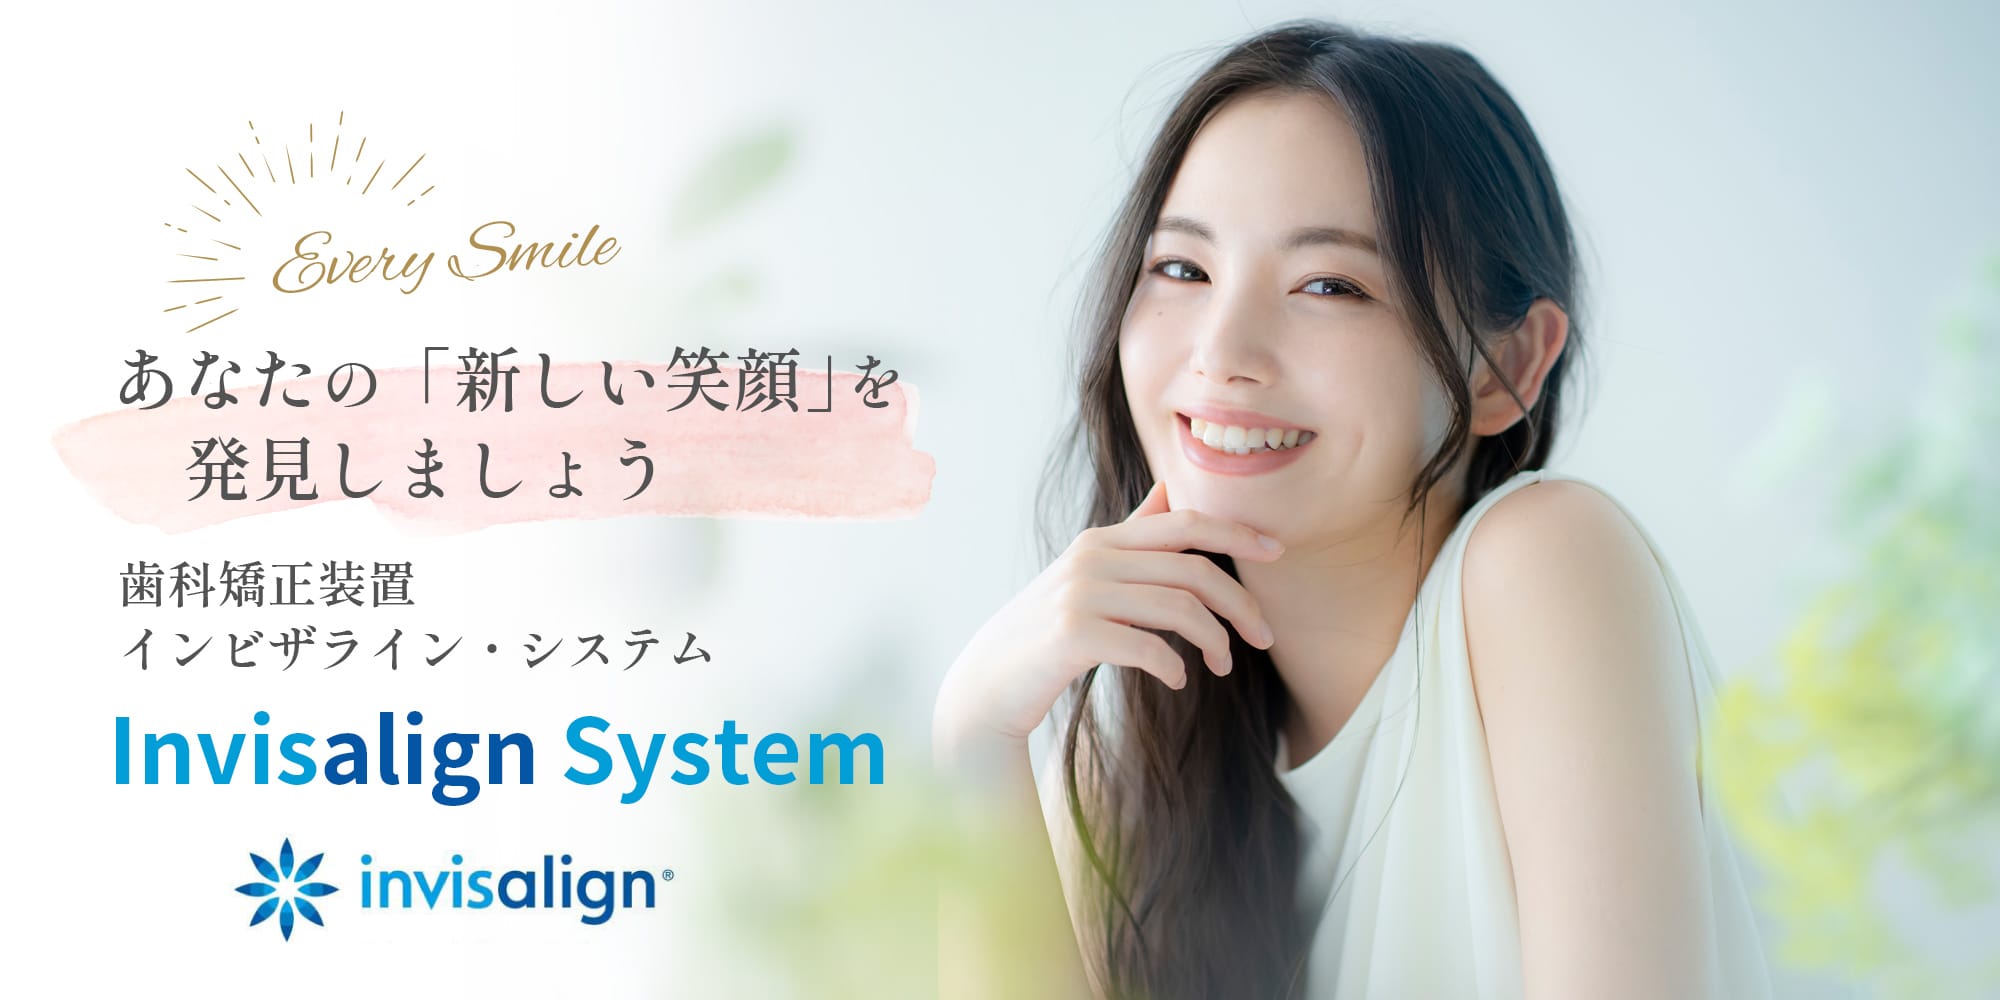 あなたの「新しい笑顔」を発見しましょう 歯科矯正装置 インビザライン・システム Invisalign Sistem